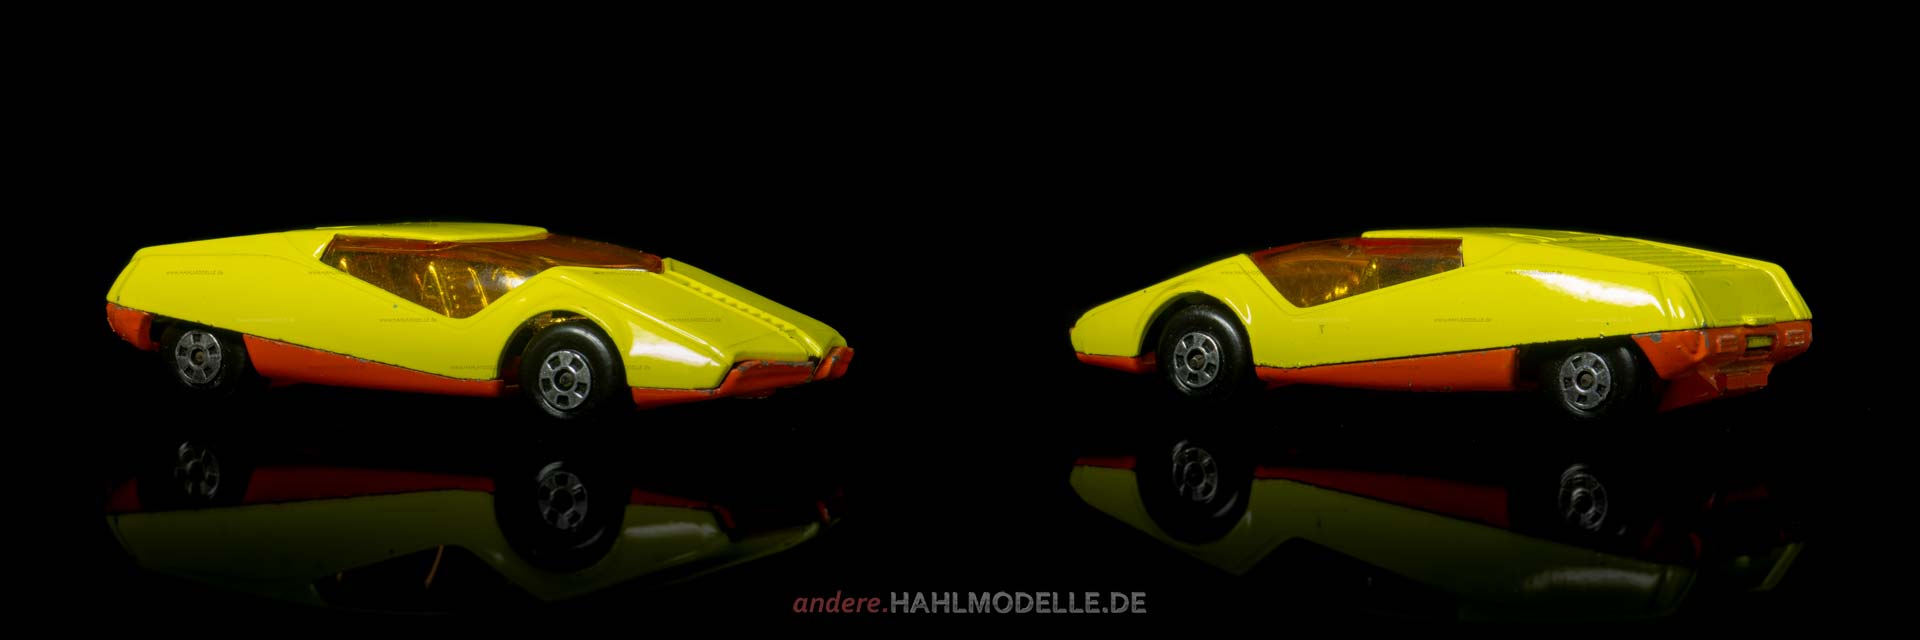 Datsun 126X | Sportwagen | Lesney Products & Co. Ltd. | Matchbox Superfast | www.andere.hahlmodelle.de